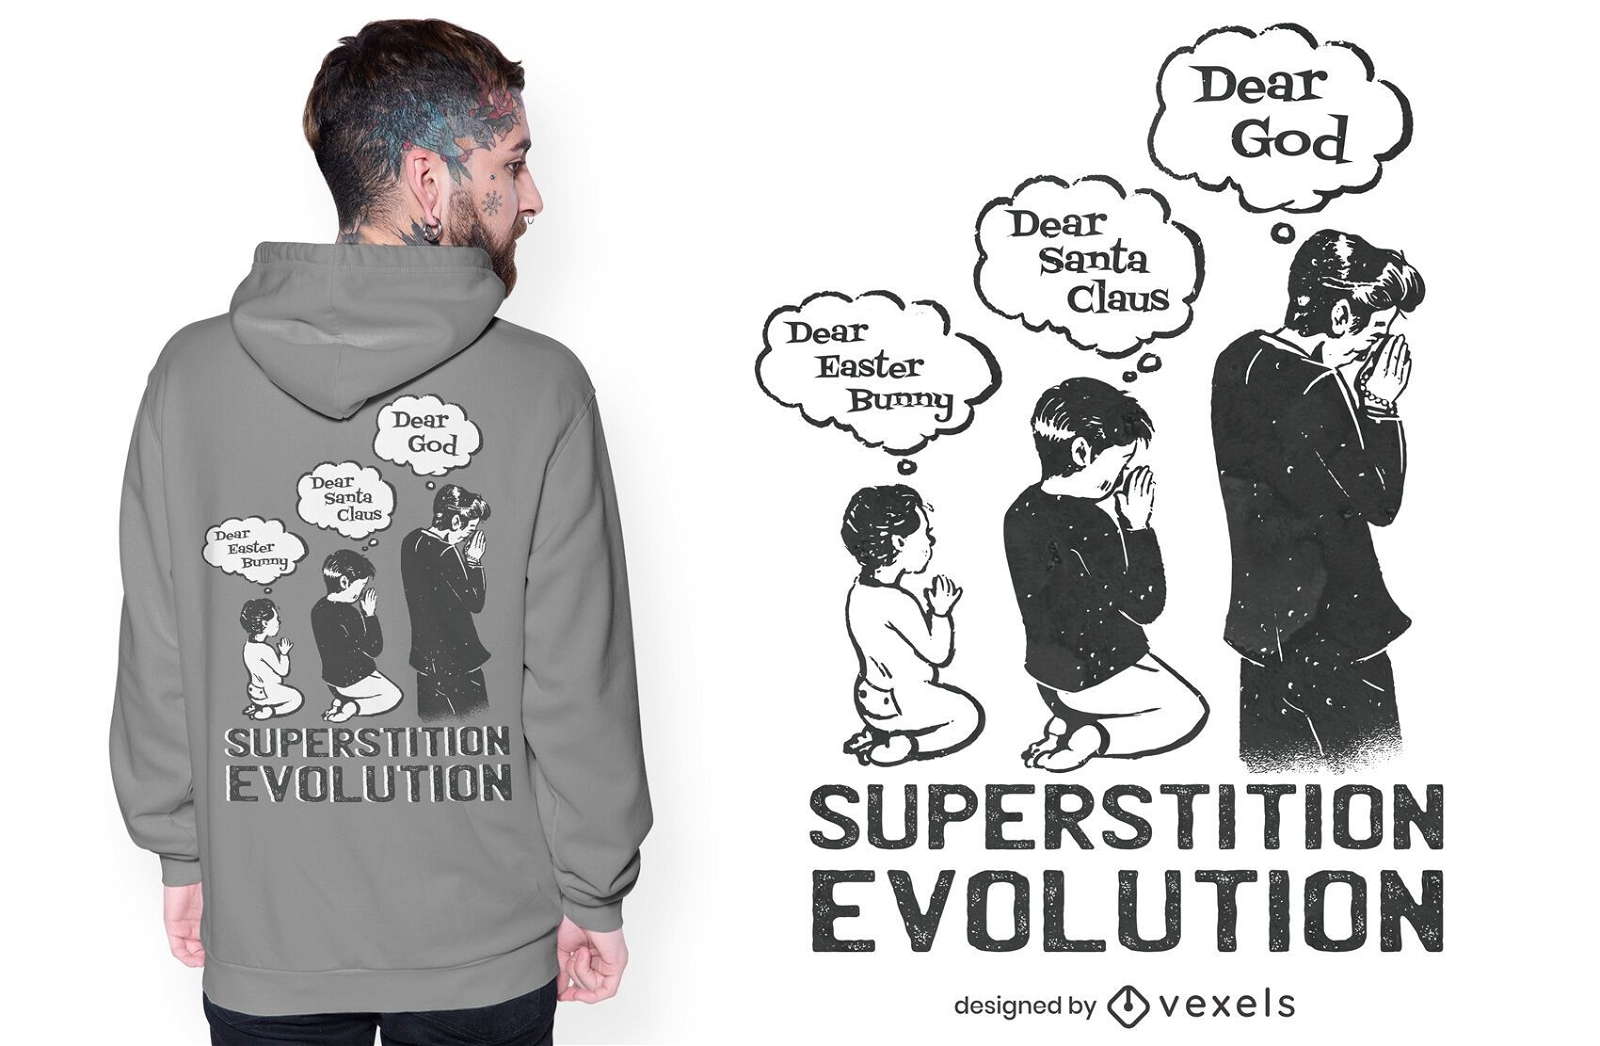 Superstition evolution t-shirt design